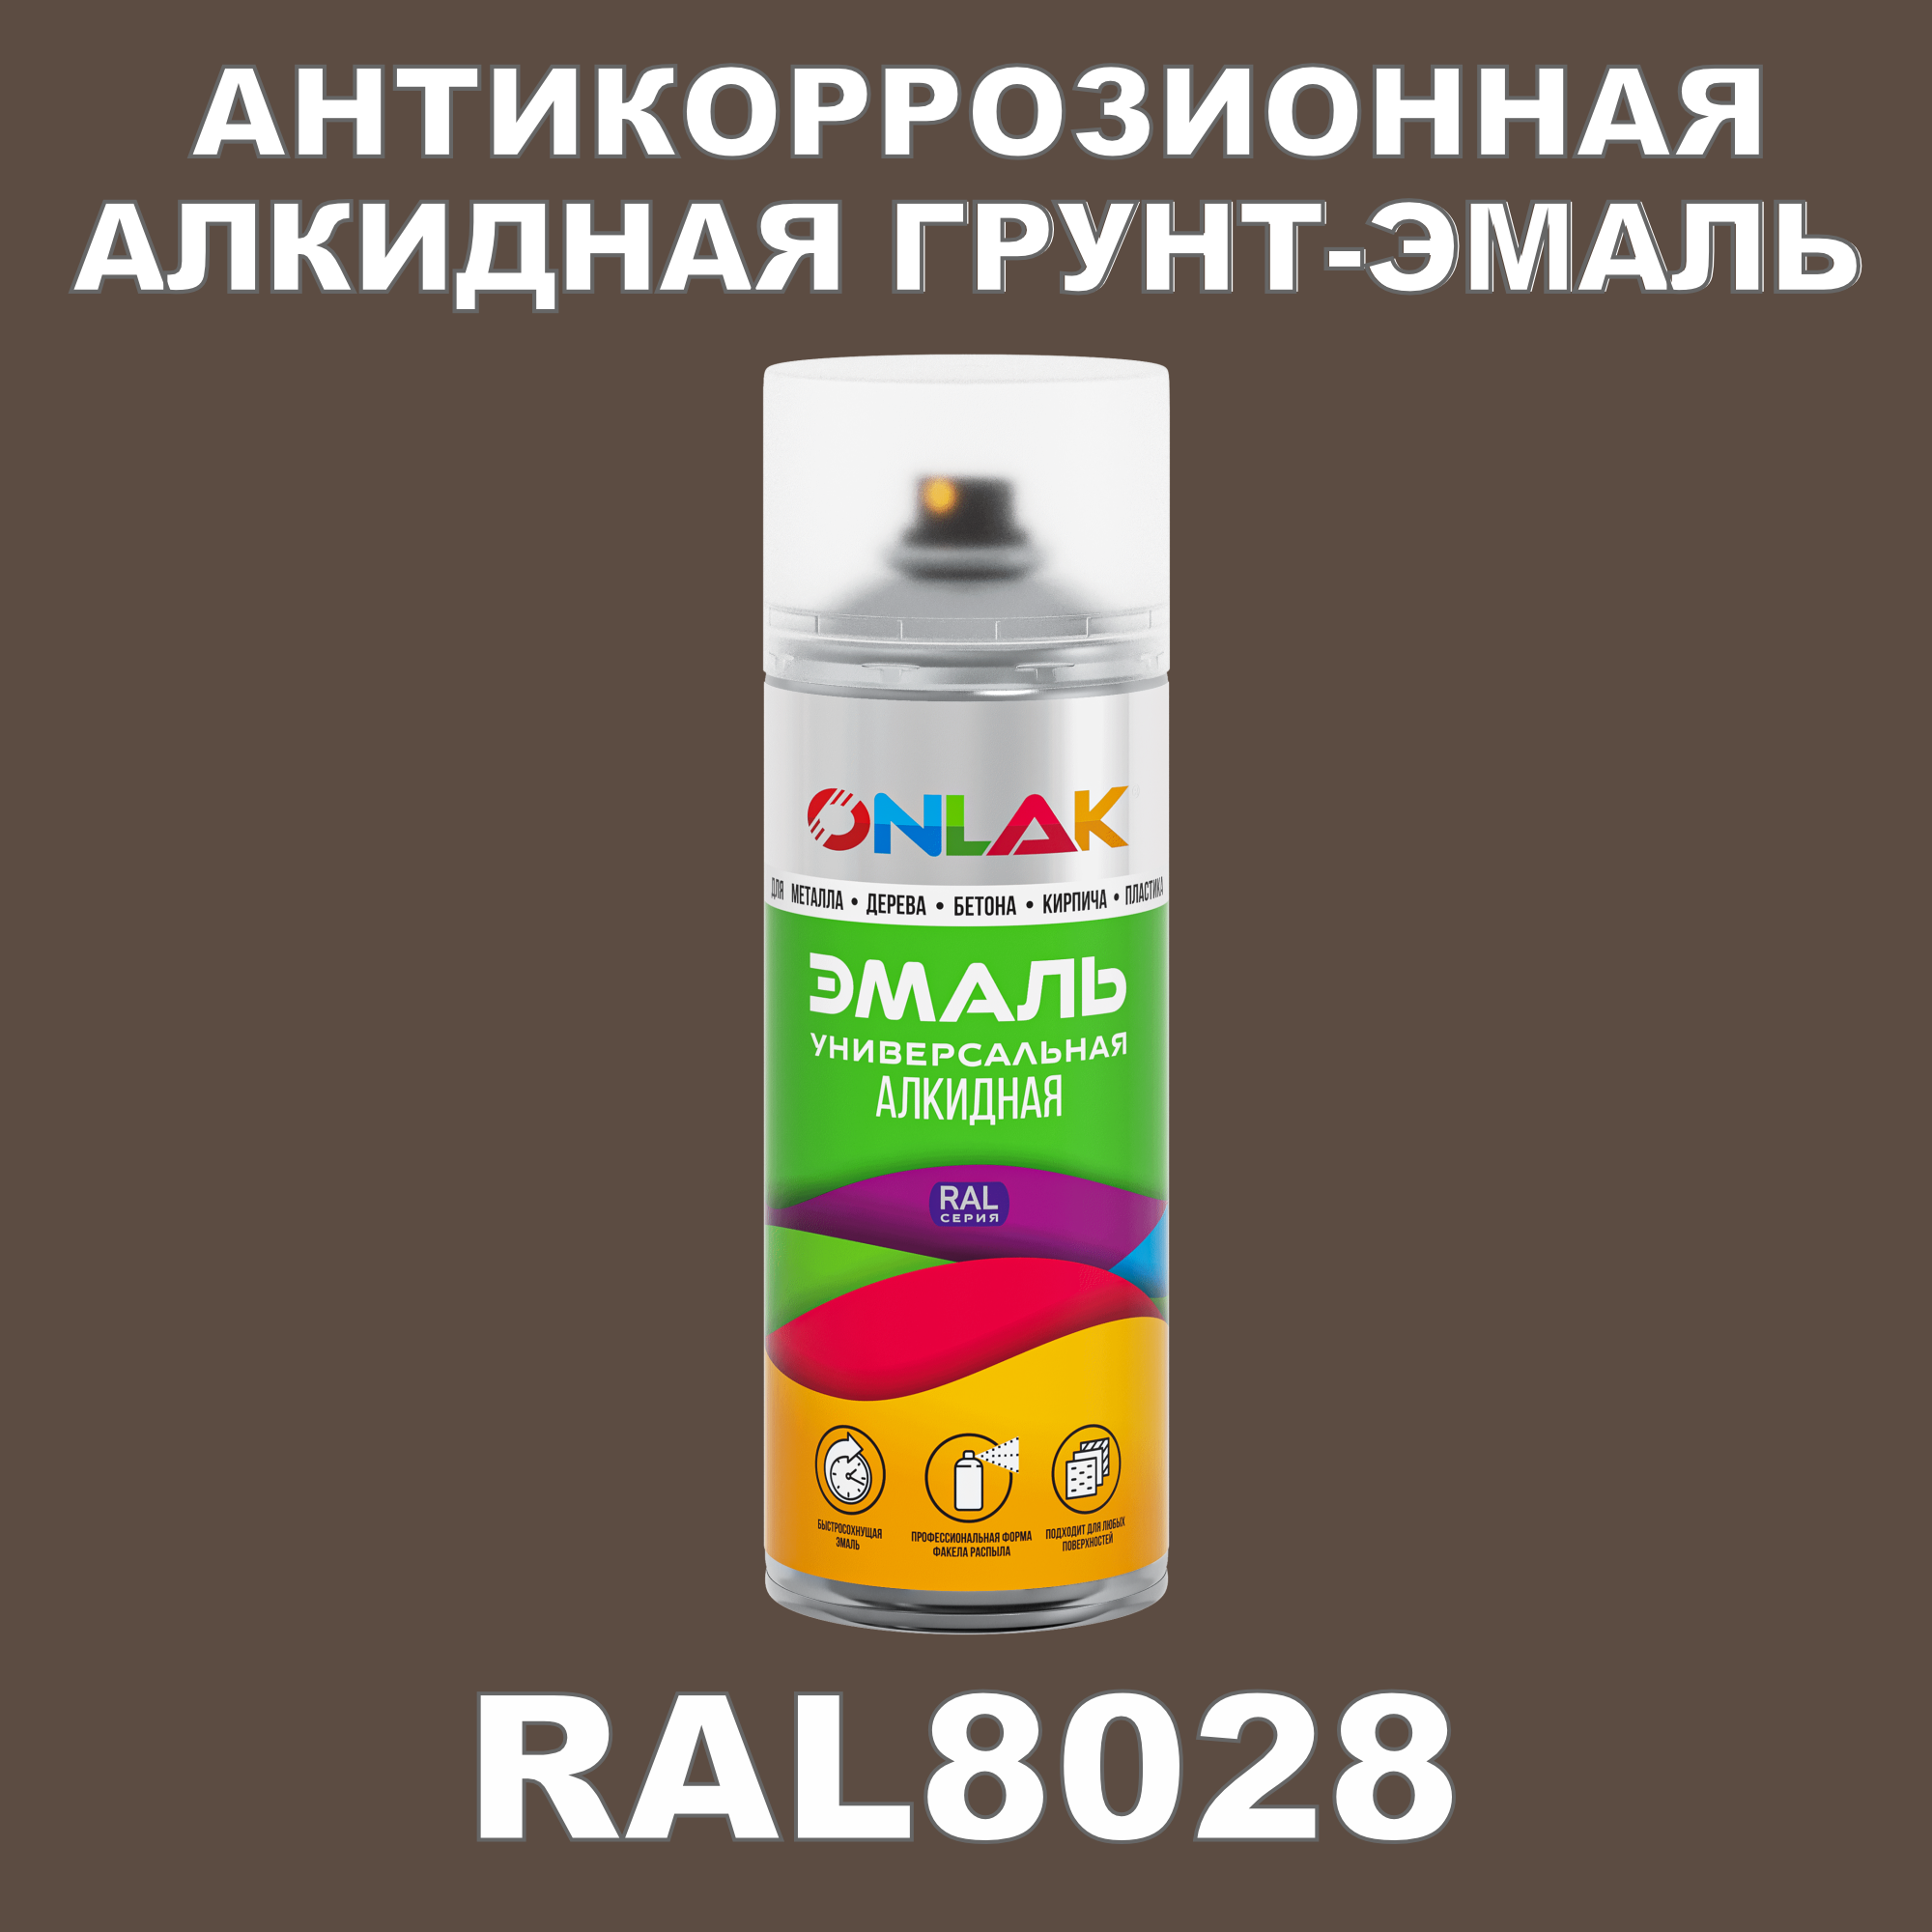 Антикоррозионная грунт-эмаль ONLAK RAL8028 полуматовая для металла и защиты от ржавчины